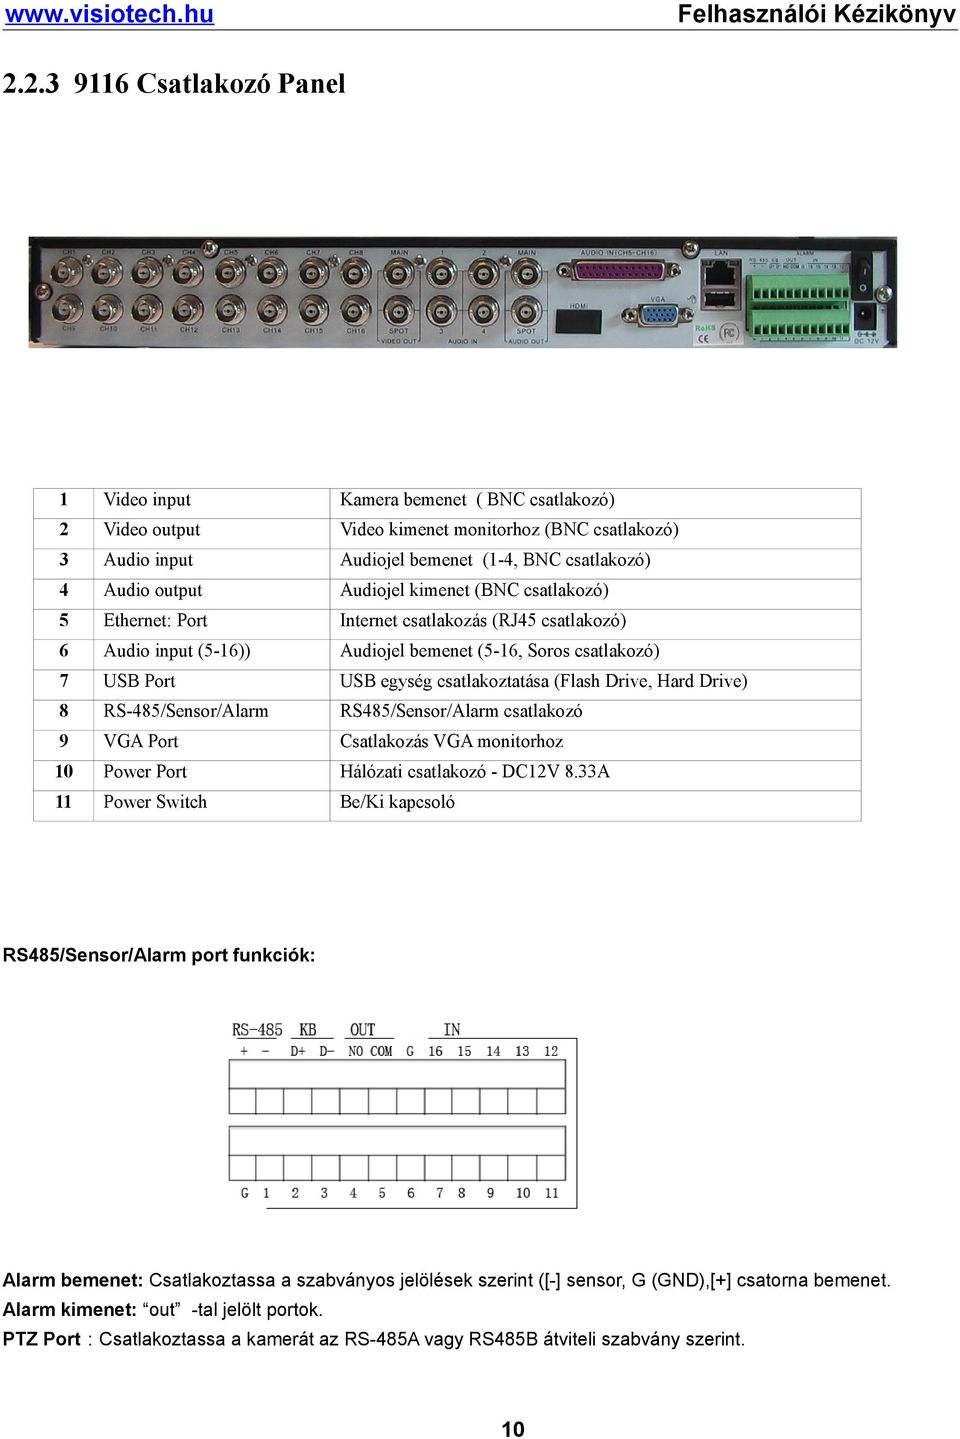 Drive, Hard Drive) 8 RS-485/Sensor/Alarm RS485/Sensor/Alarm csatlakozó 9 VGA Port Csatlakozás VGA monitorhoz 10 Power Port Hálózati csatlakozó - DC12V 8.